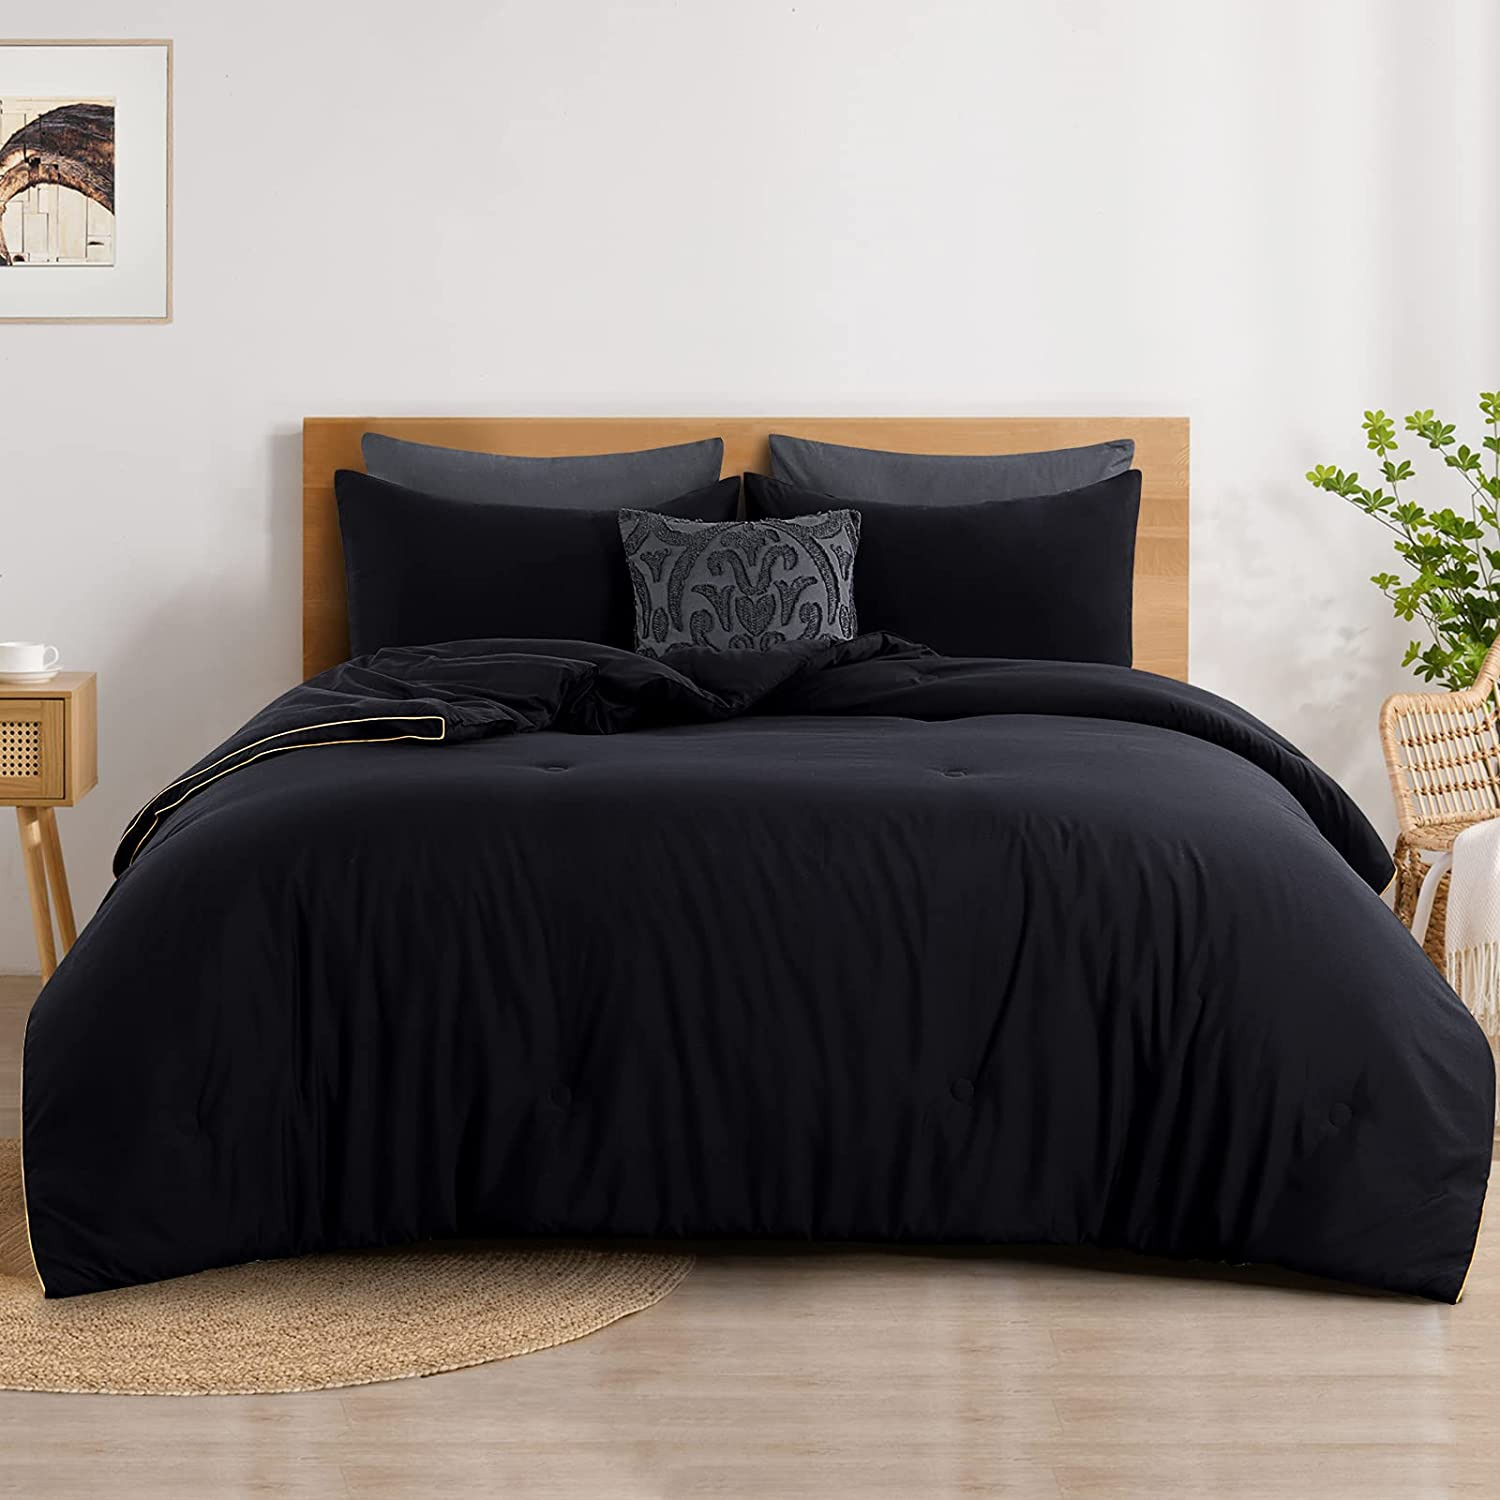 Comforter All Season Queen Size - Soft down Alternative, Fluffy & Lightweight, C